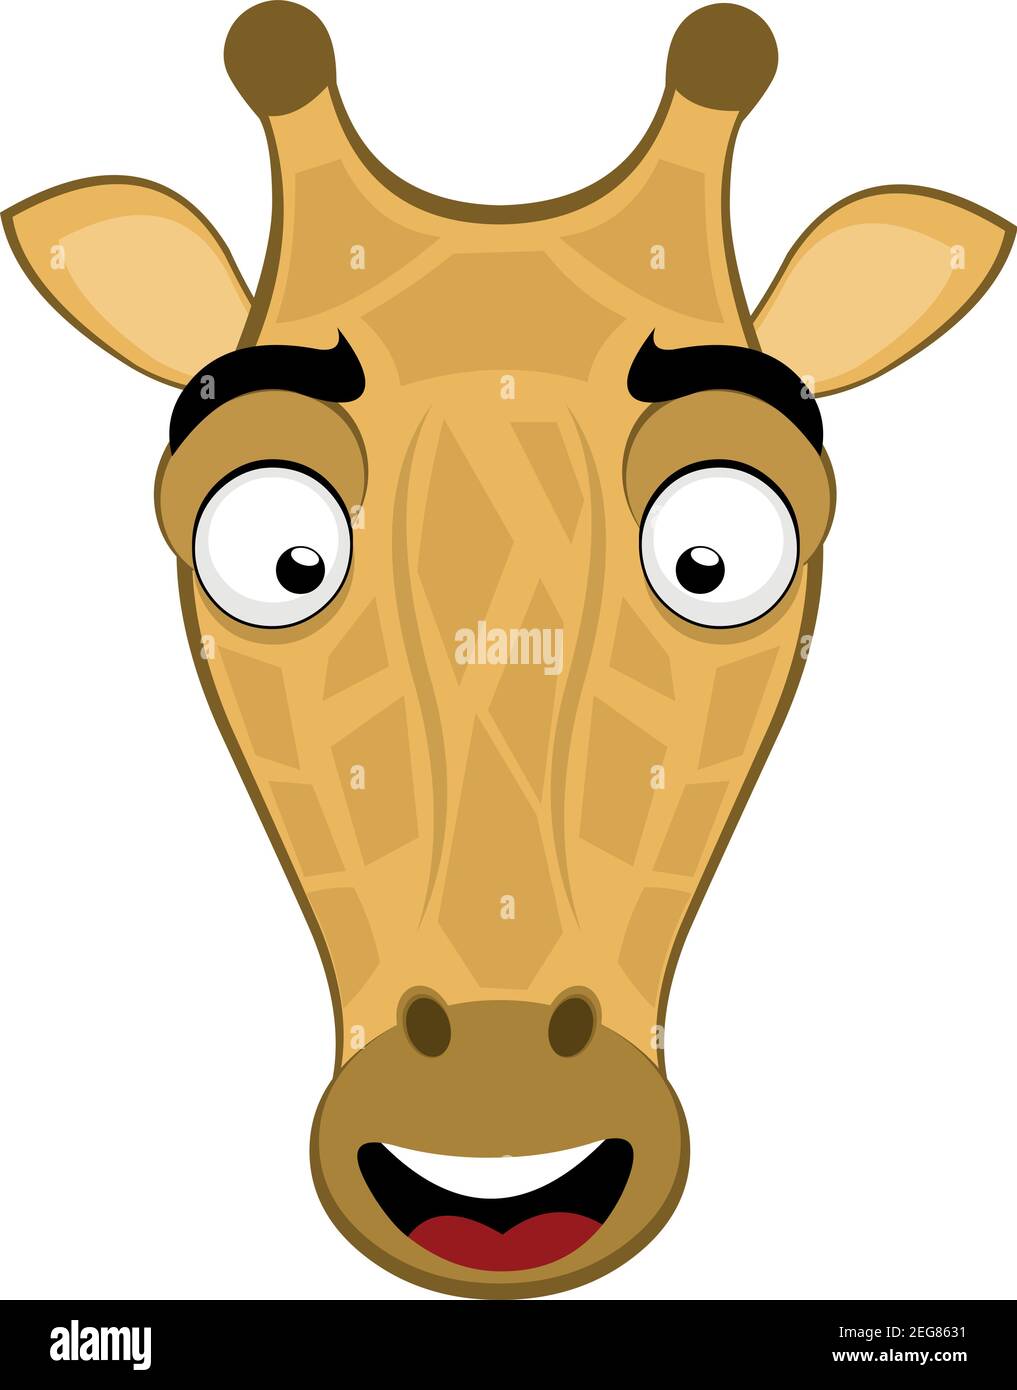 Vettore emoticon illustrazione cartoon della testa di una giraffa con un'espressione felice e sorridente Illustrazione Vettoriale